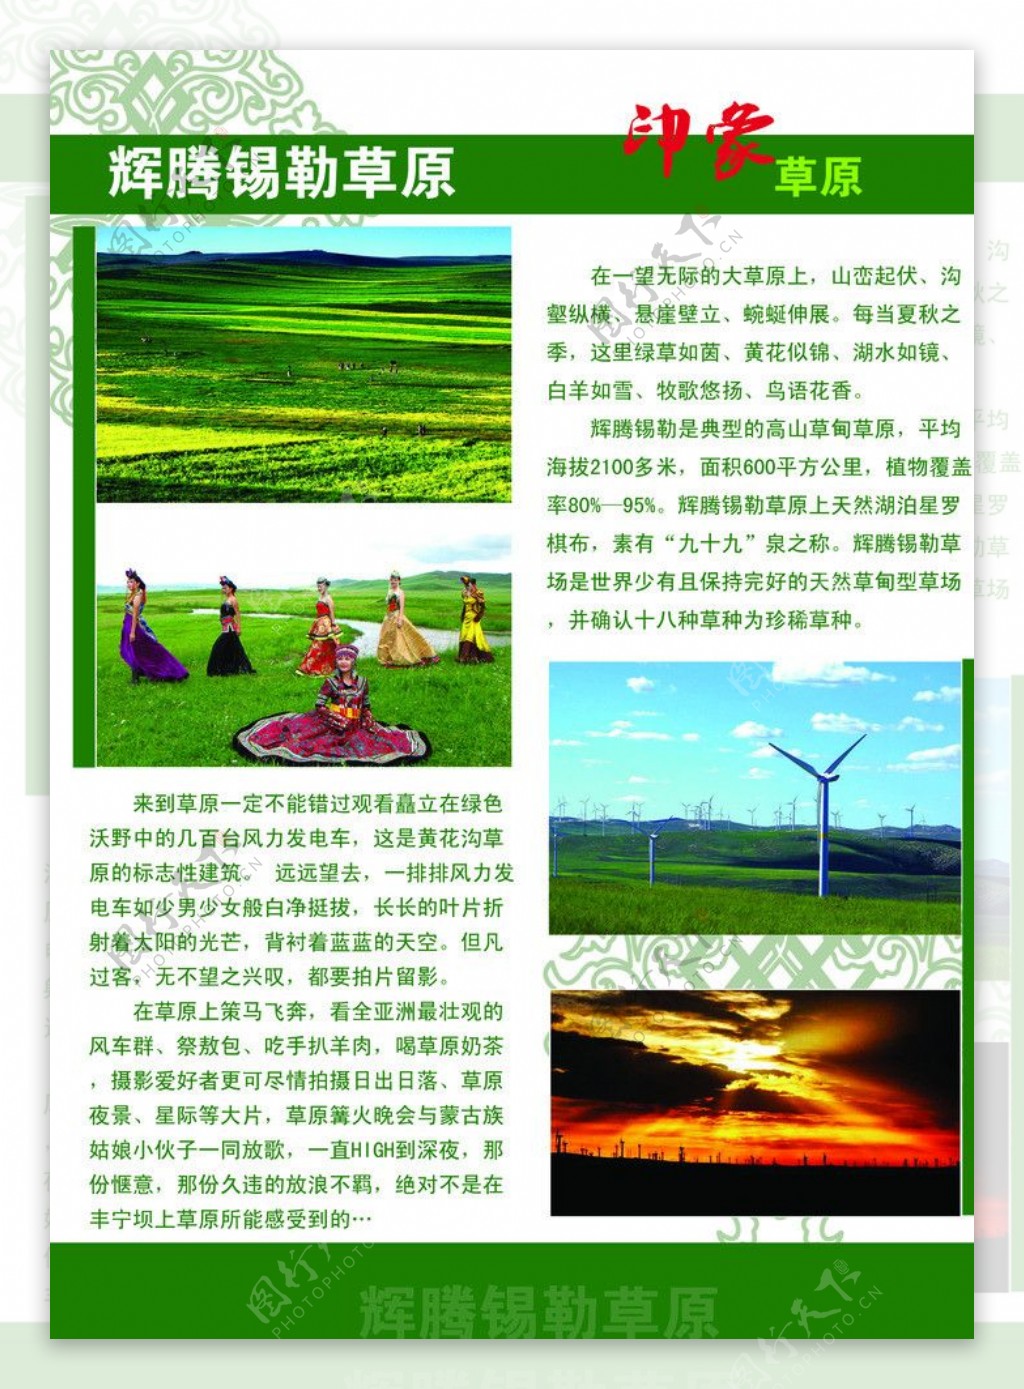 辉腾锡勒草原宣传图片